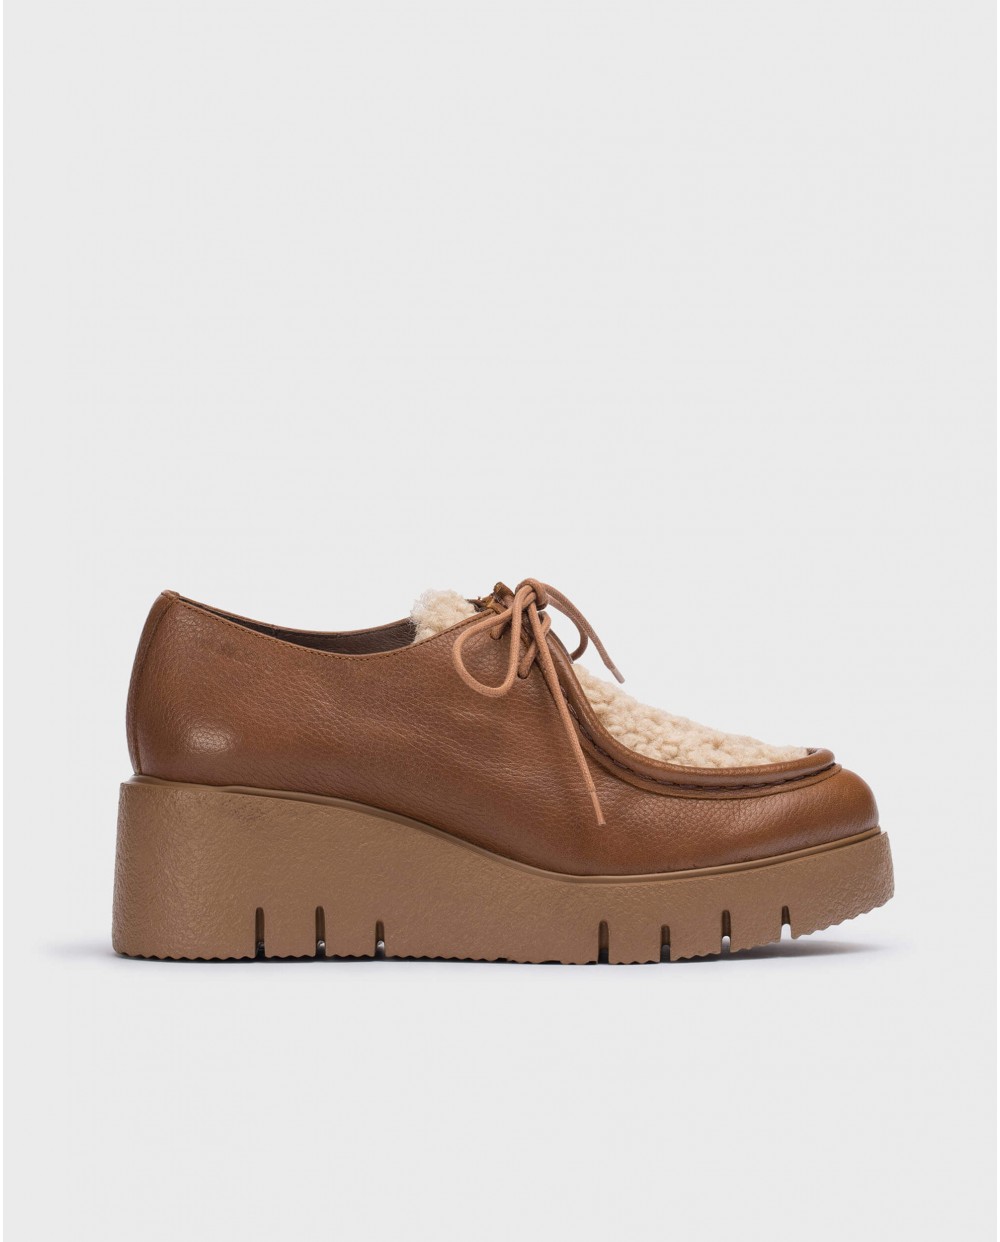 Leather MAXI shoe